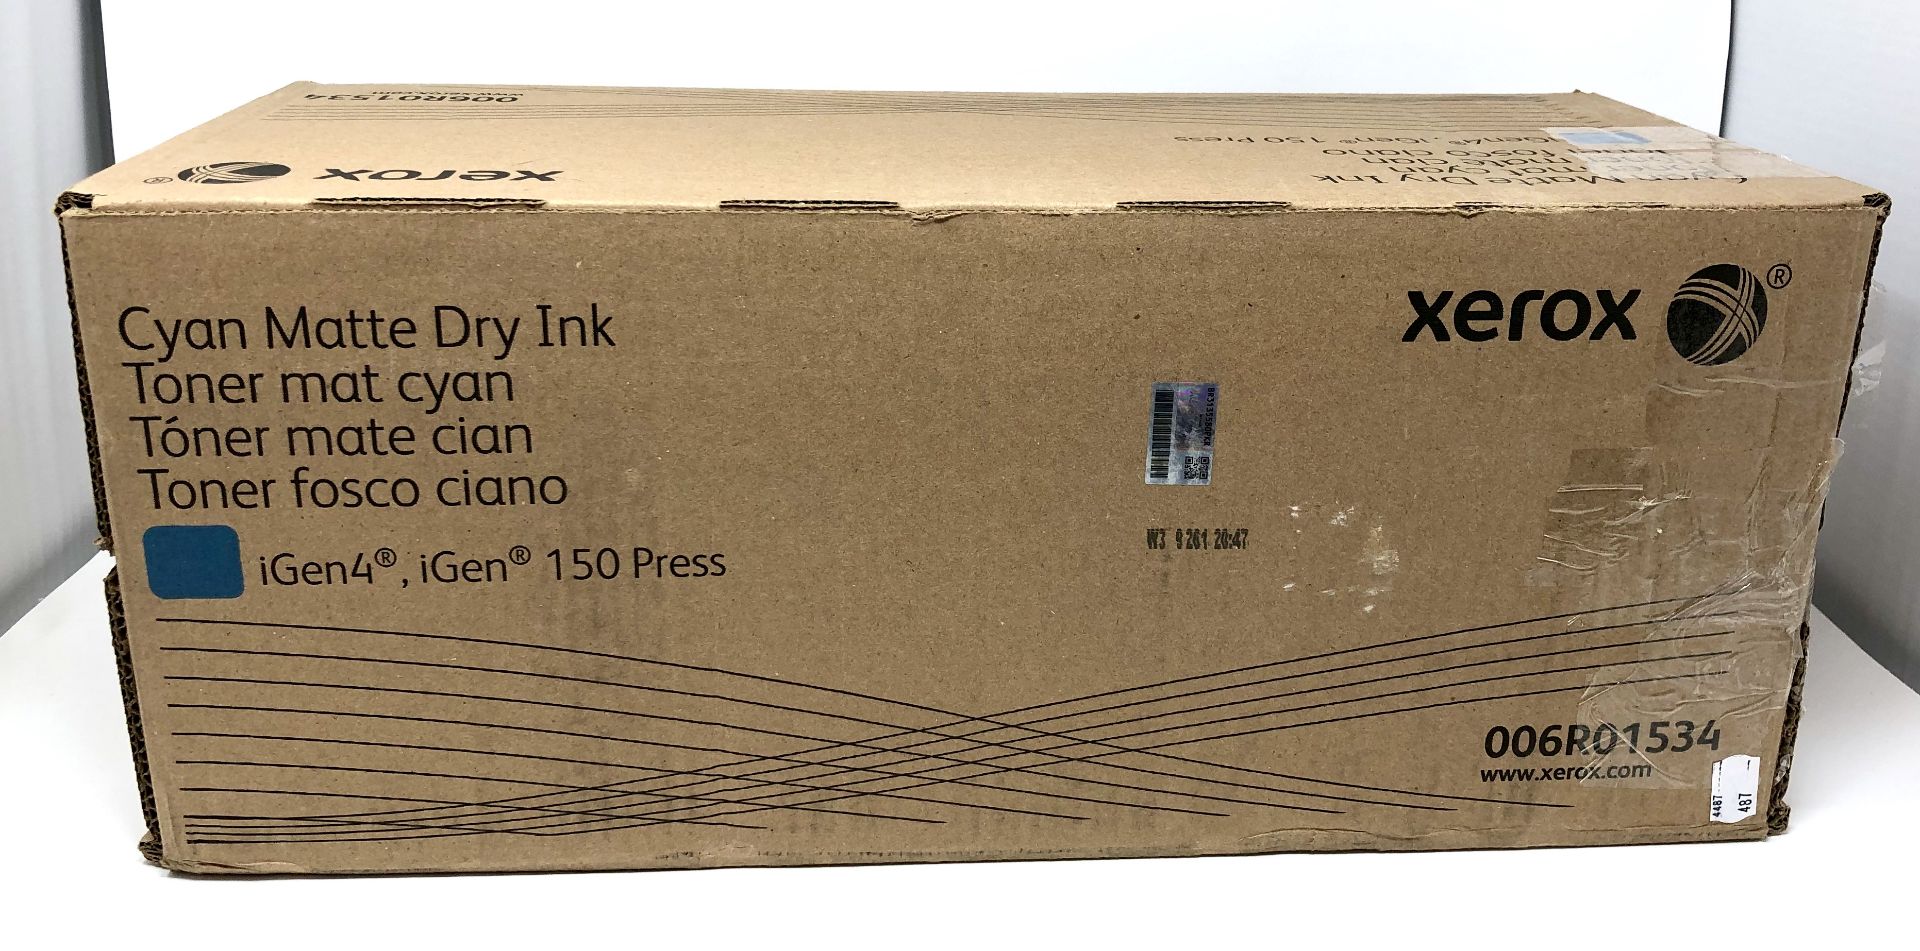 A boxed as new Xerox iGen 150 / iGen4 Cyan Matte Dry Ink Cartridge (006R01534) (Box opened).